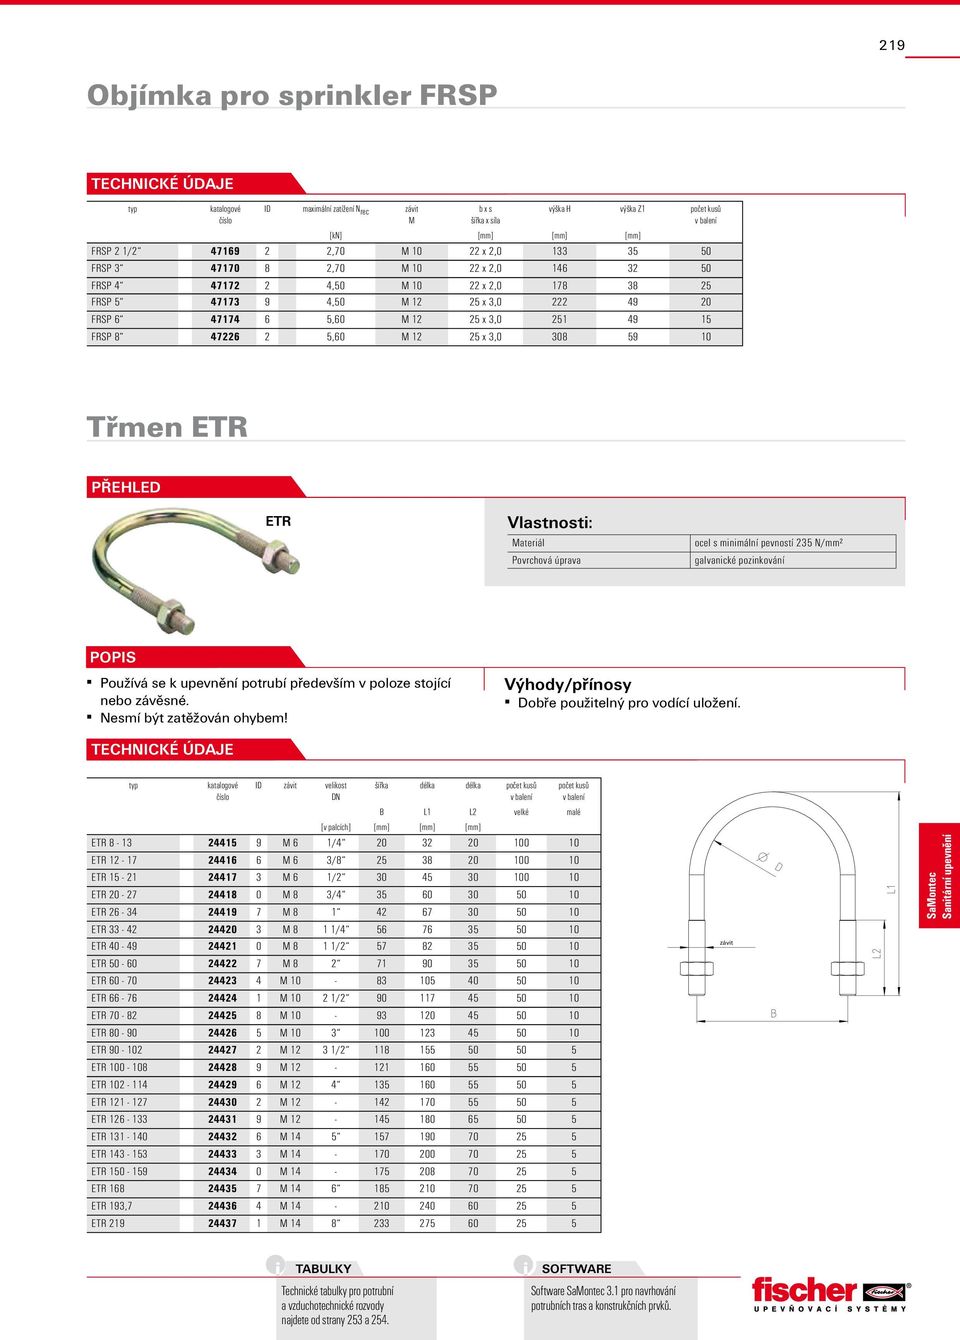 308 59 10 Třmen ETR přehled ETR Povrchová úprava ocel s minimální pevností 235 N/mm² galvanické pozinkování Používá se k upevnění potrubí především v poloze stojící nebo závěsné.